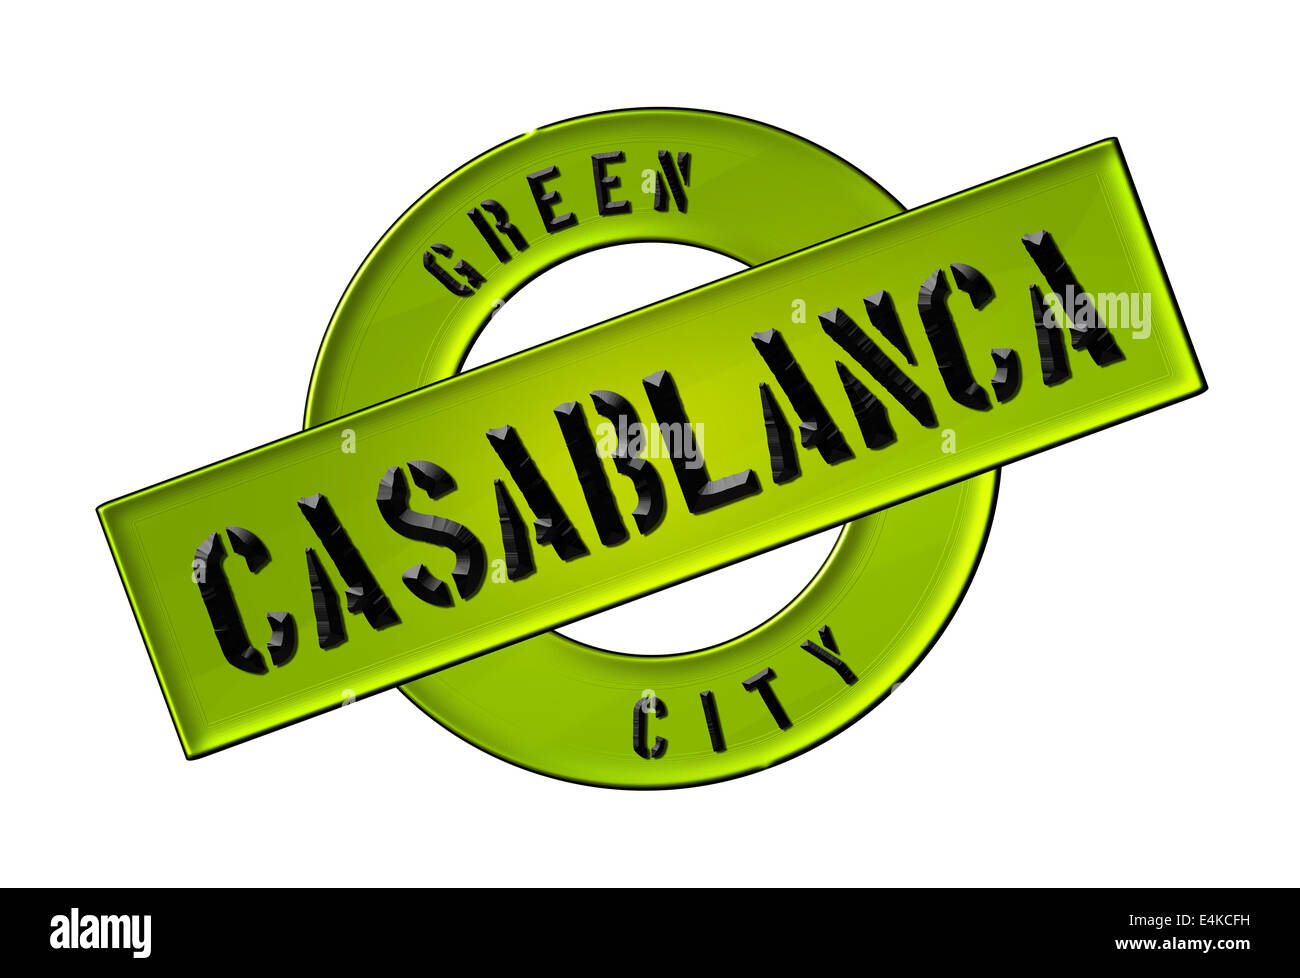 GREEN CITY CASABLANCA Banque D'Images